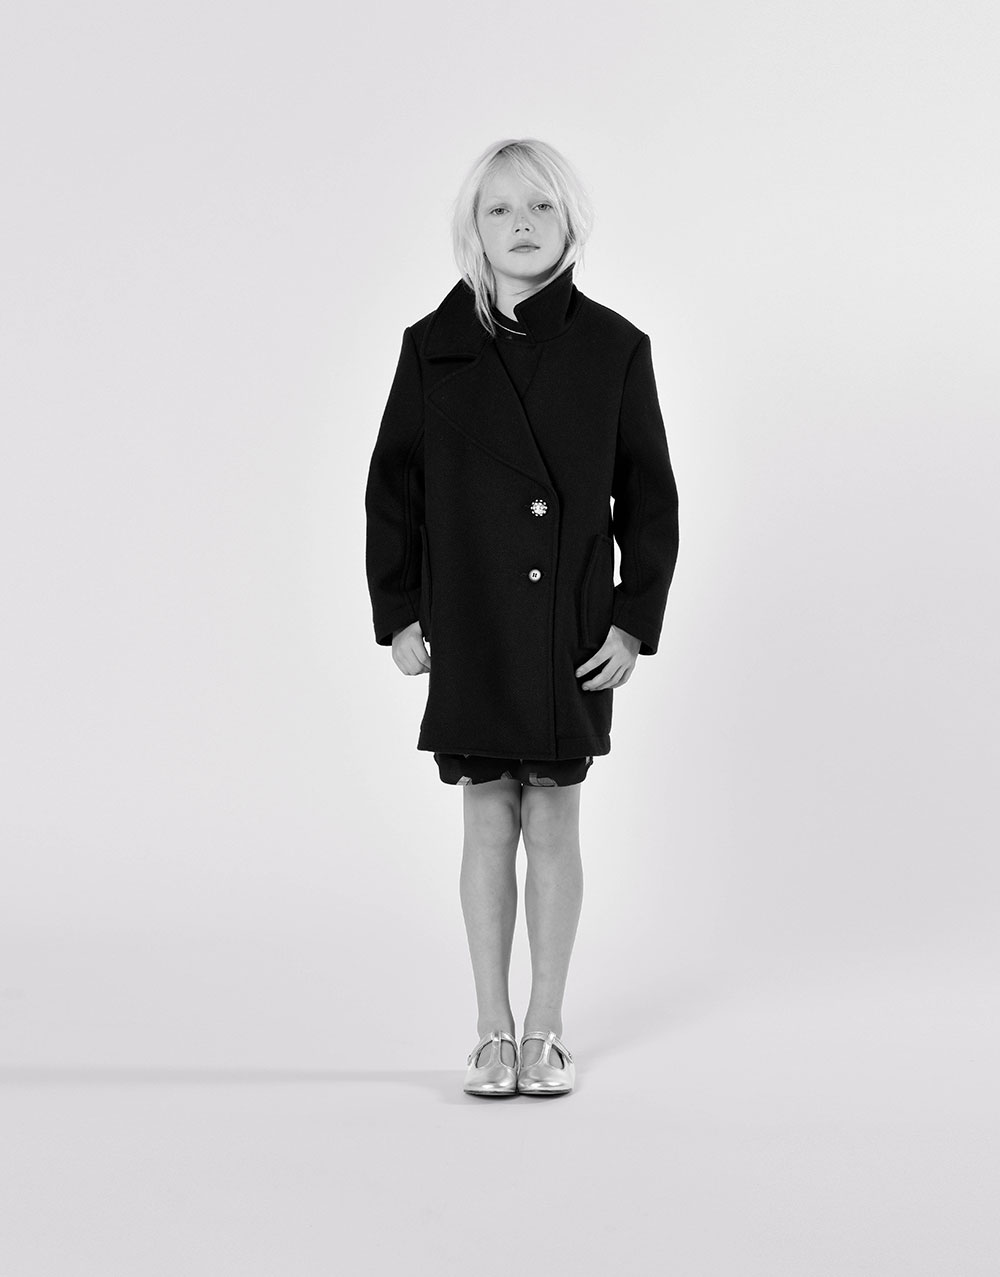 zwarte jurk en jas van Lanvin meisjescollectie herfst winter 